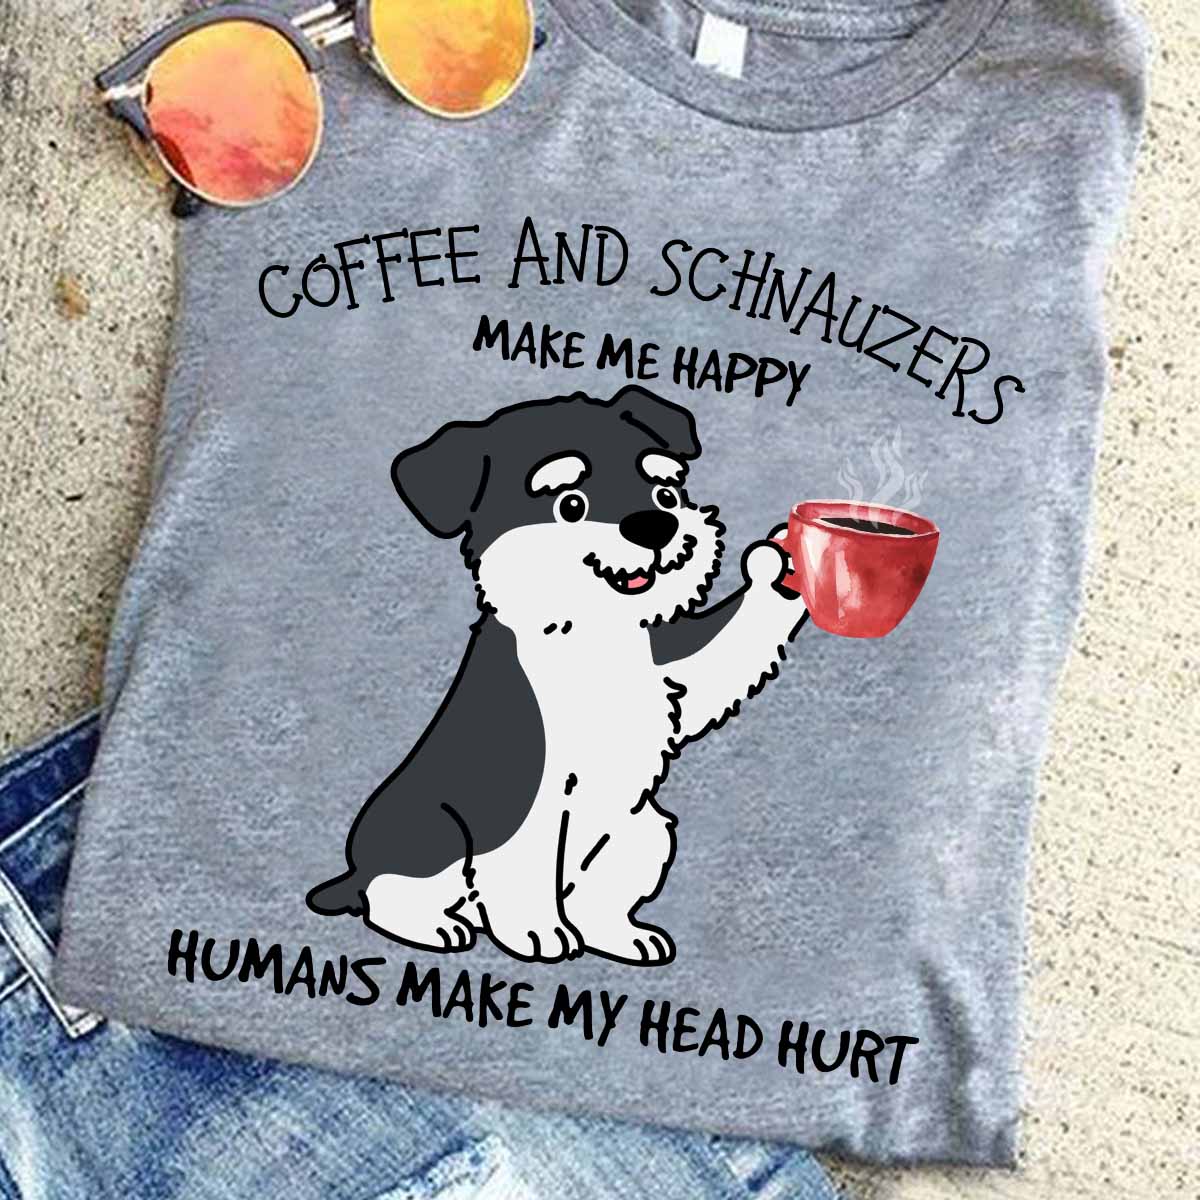 Coffee and Schnauzers make me happy humans make my head hurt